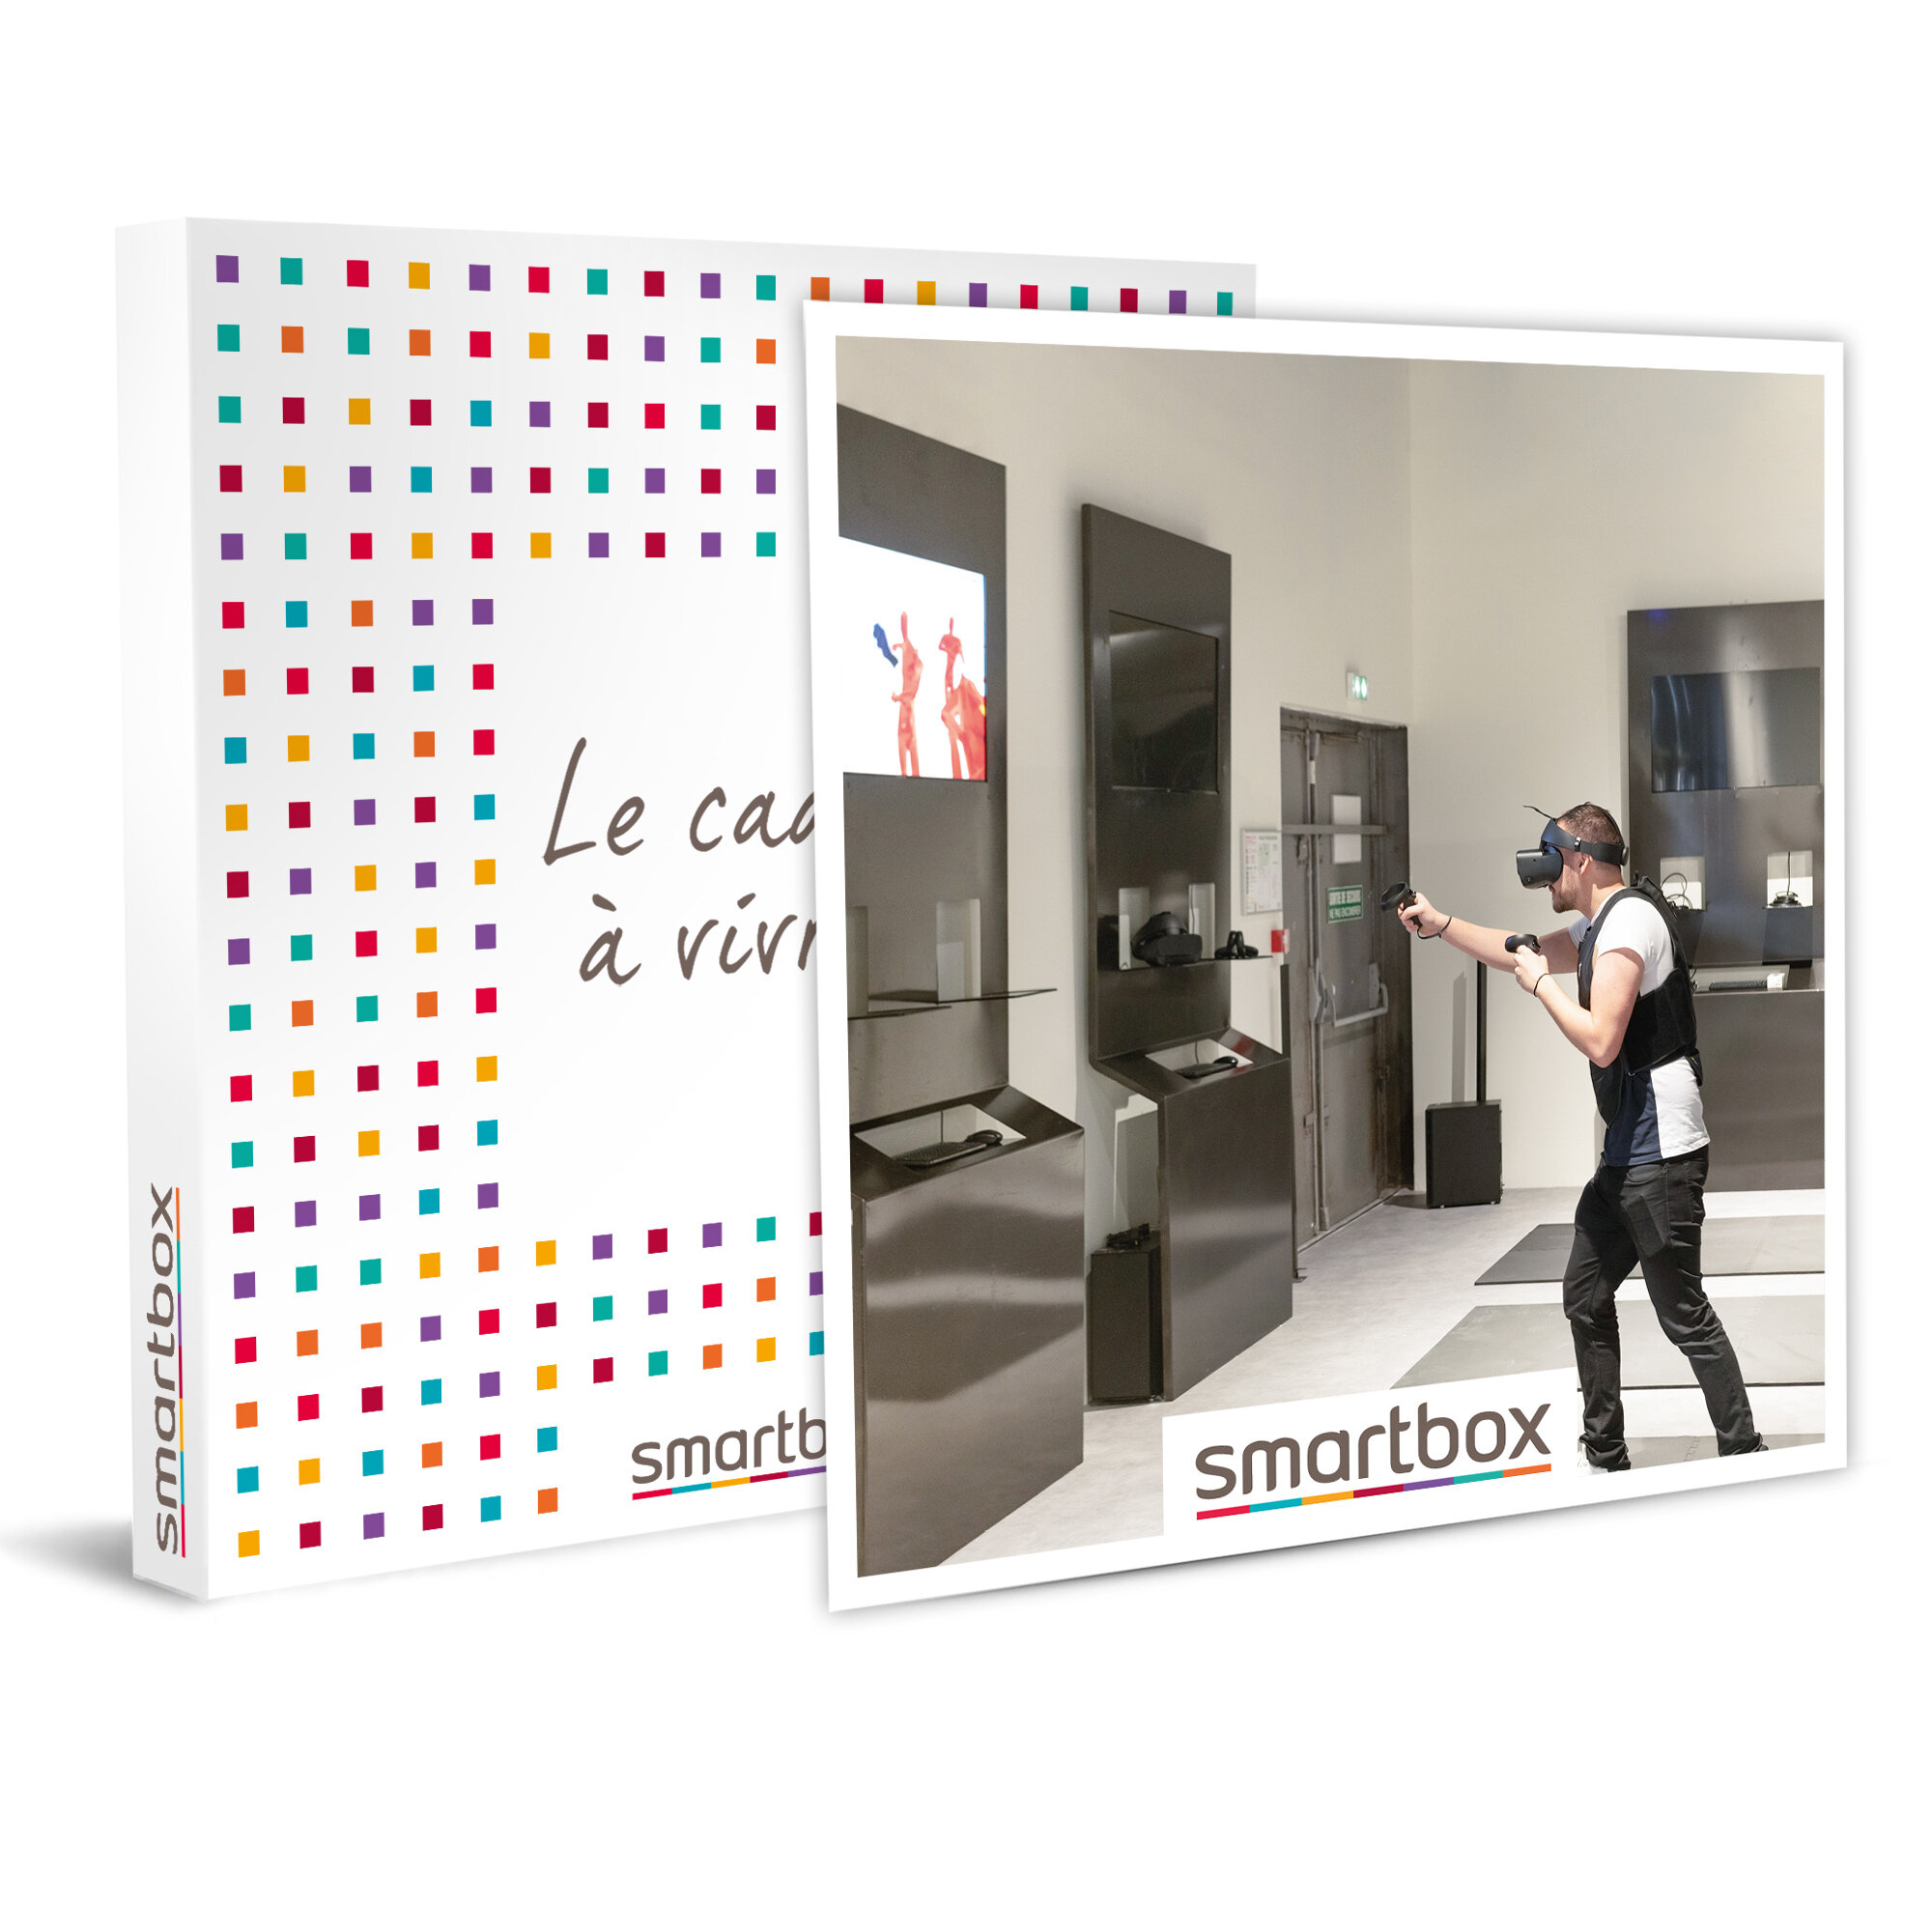 Smartbox Coffret Cadeau 2h De Realite Virtuelle Au Sud Est De Paris Pour 6 Personnes Achat Vente Coffret Sport Loisirs Smartbox 2h De Realite Virtuelle Au